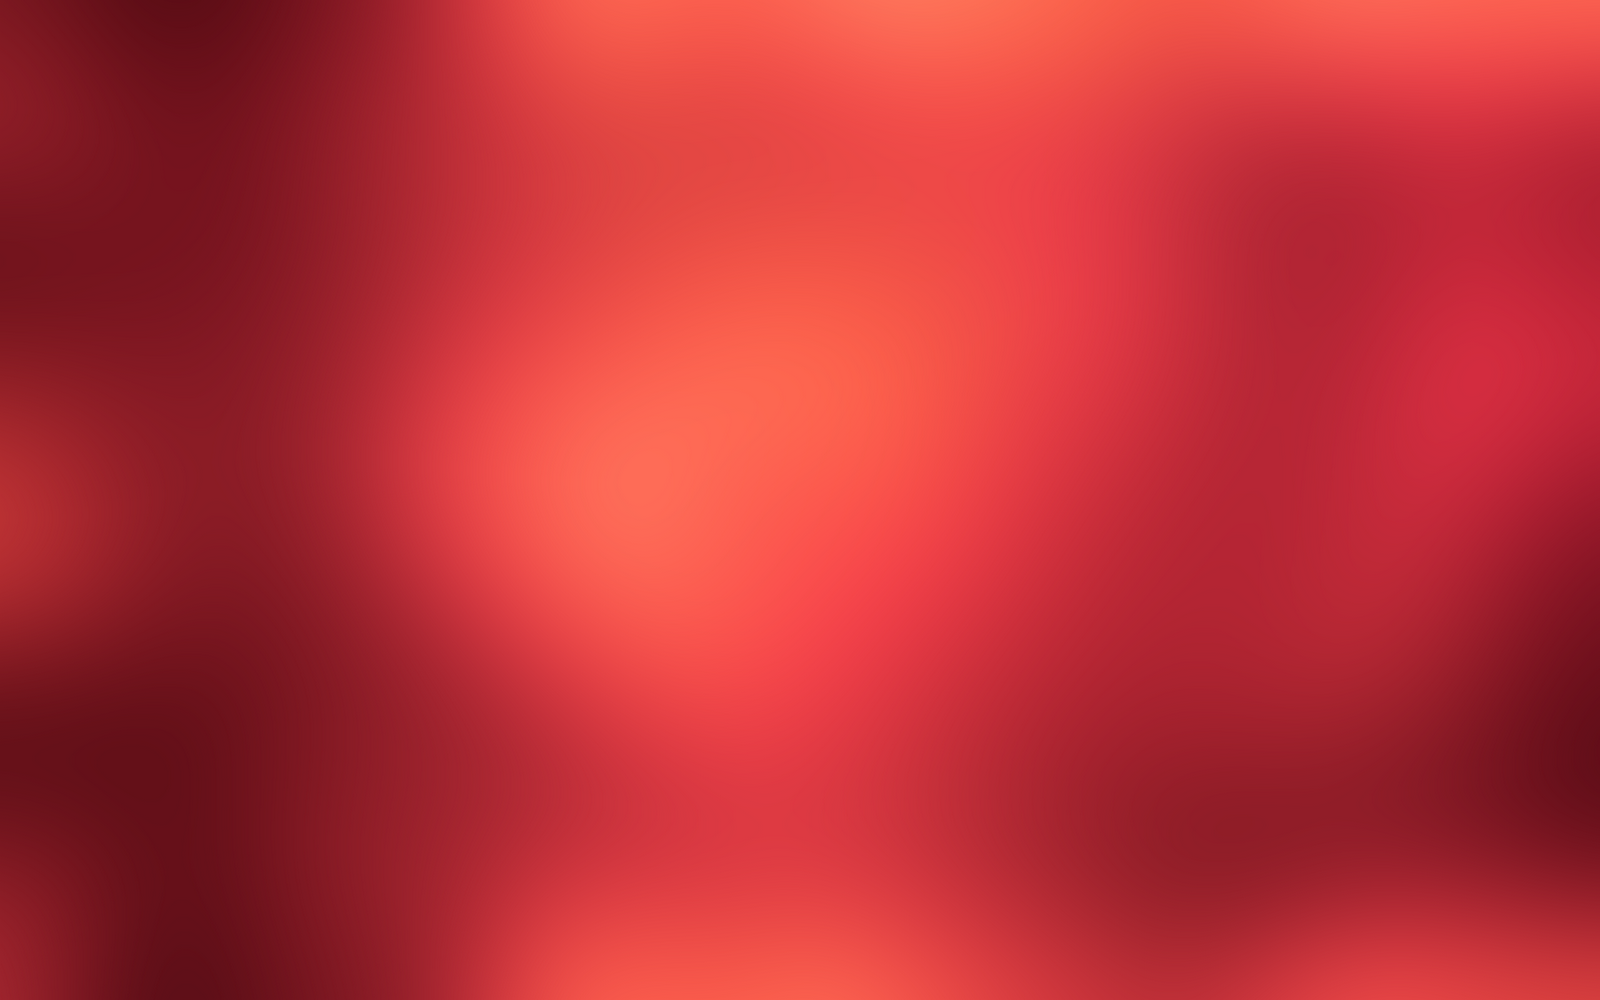 75+] Red Backgrounds - WallpaperSafari